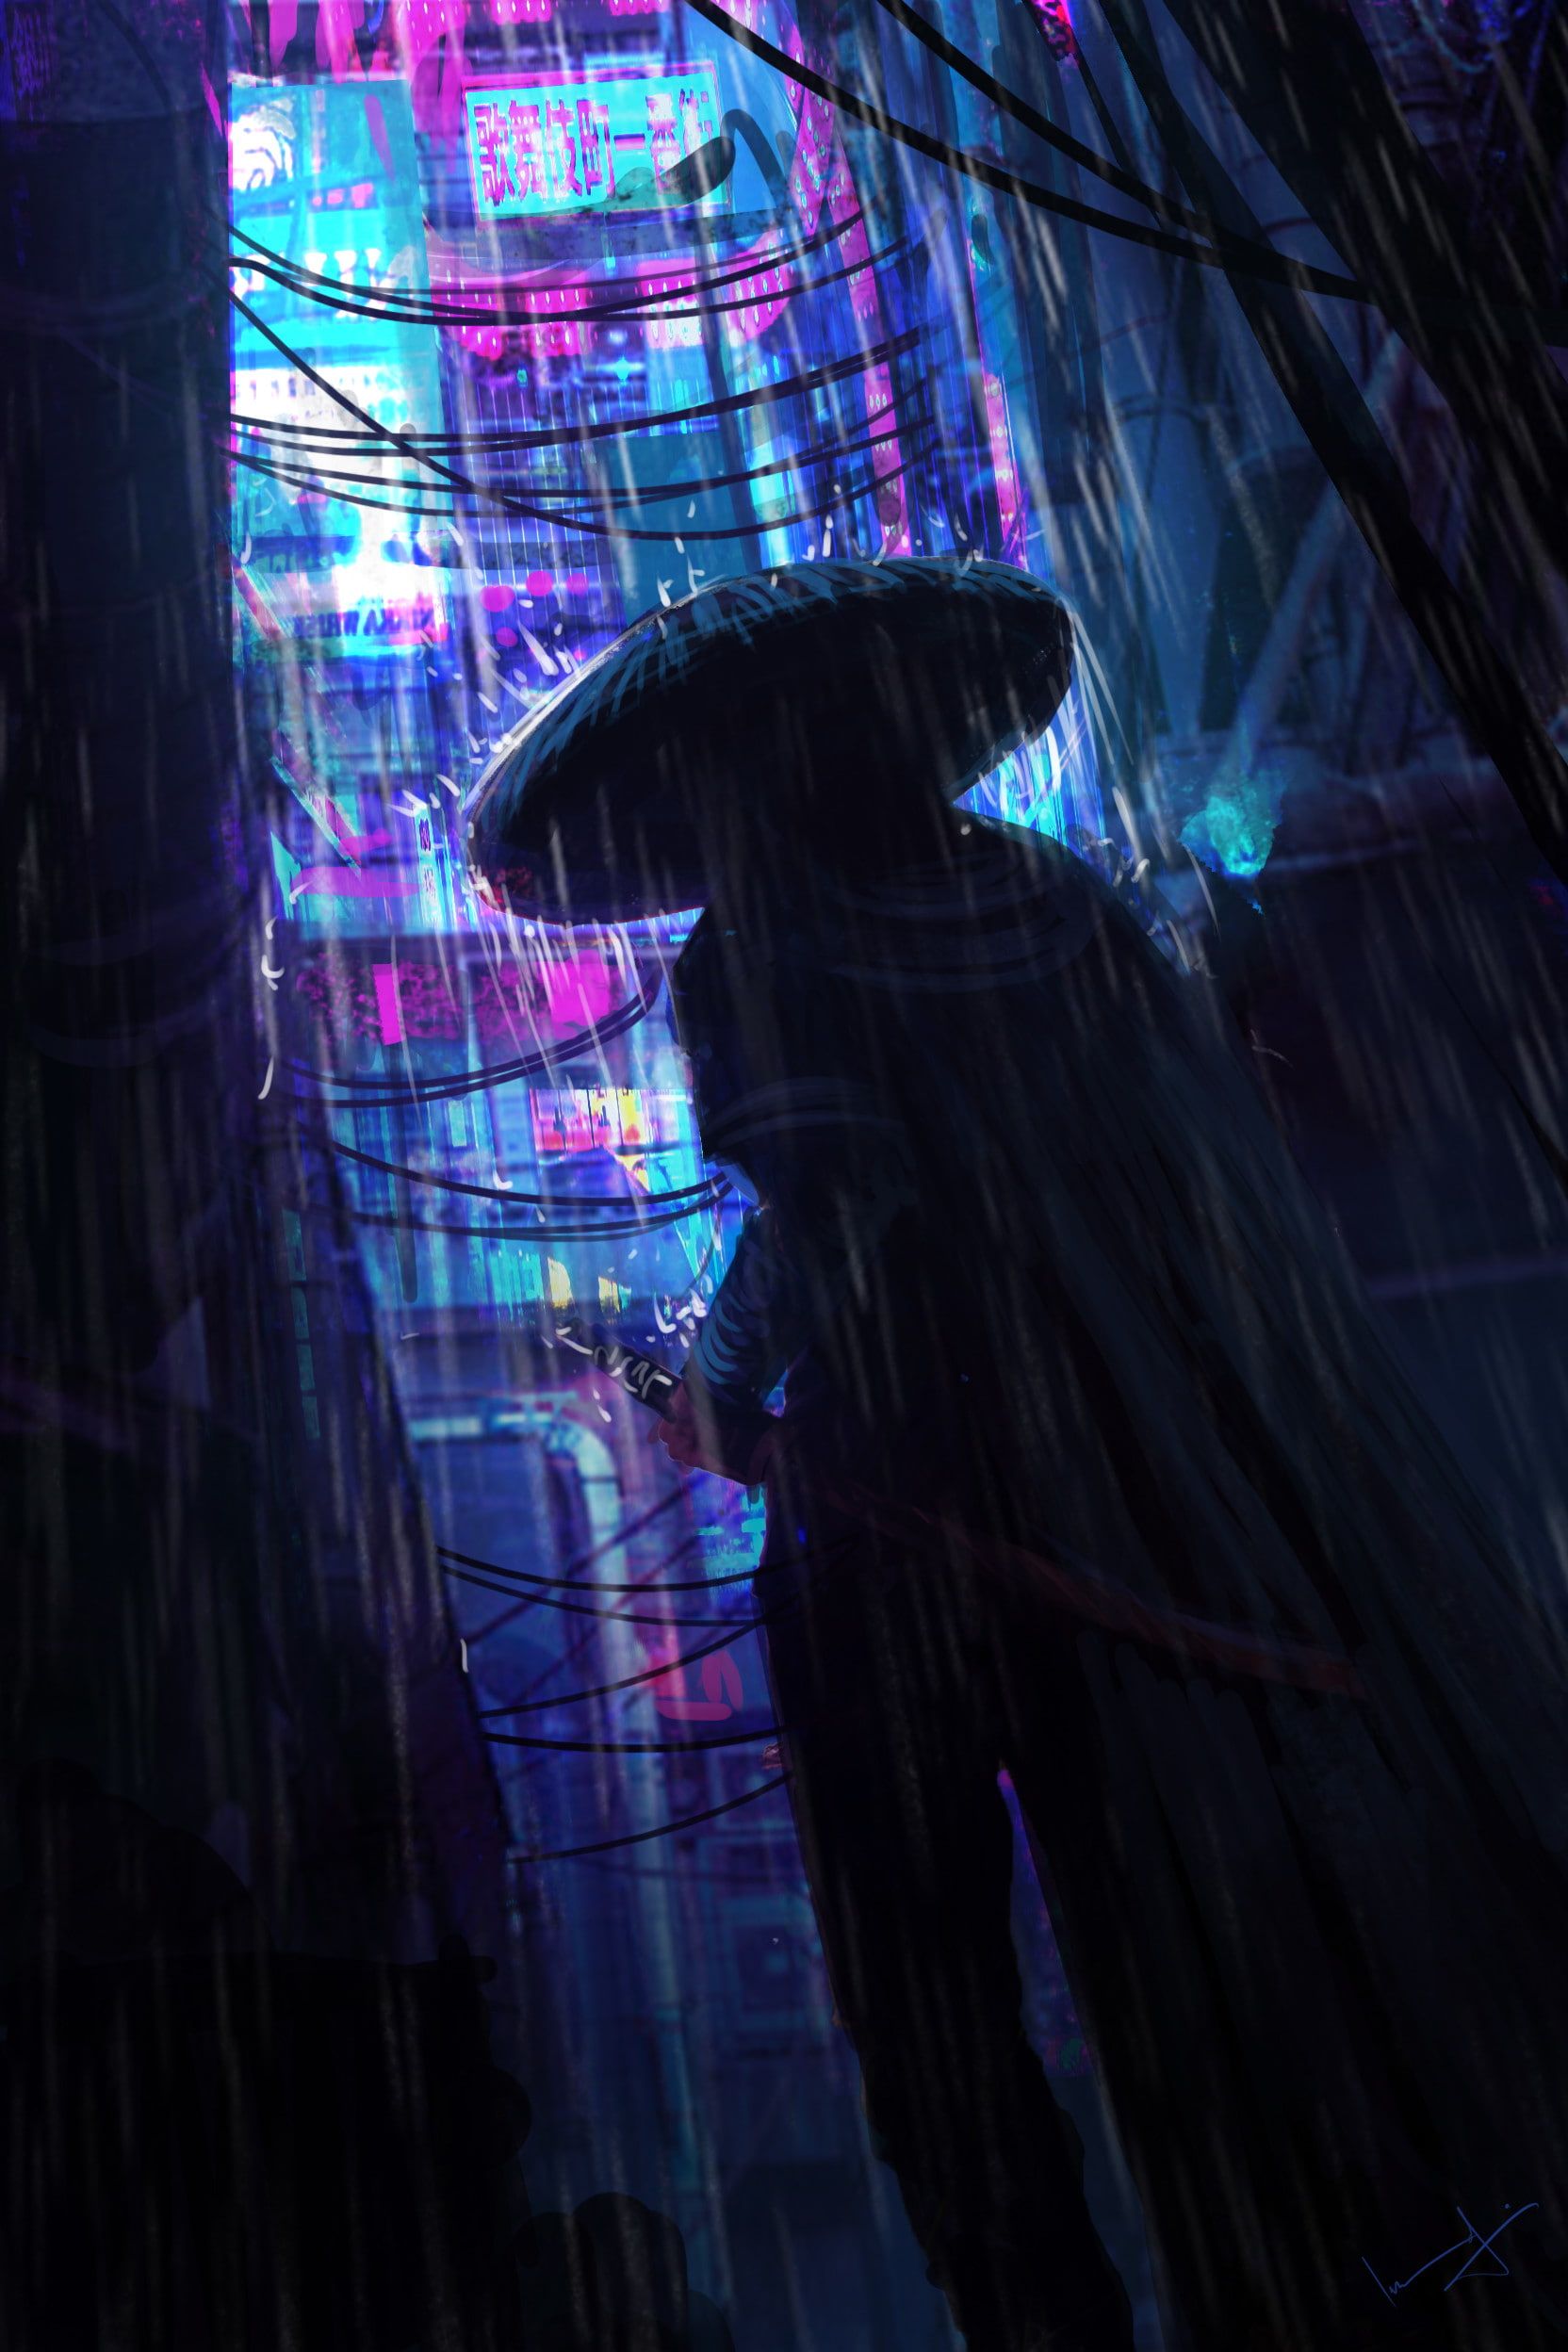 Neon Samurai Cyberpunk Wallpapers